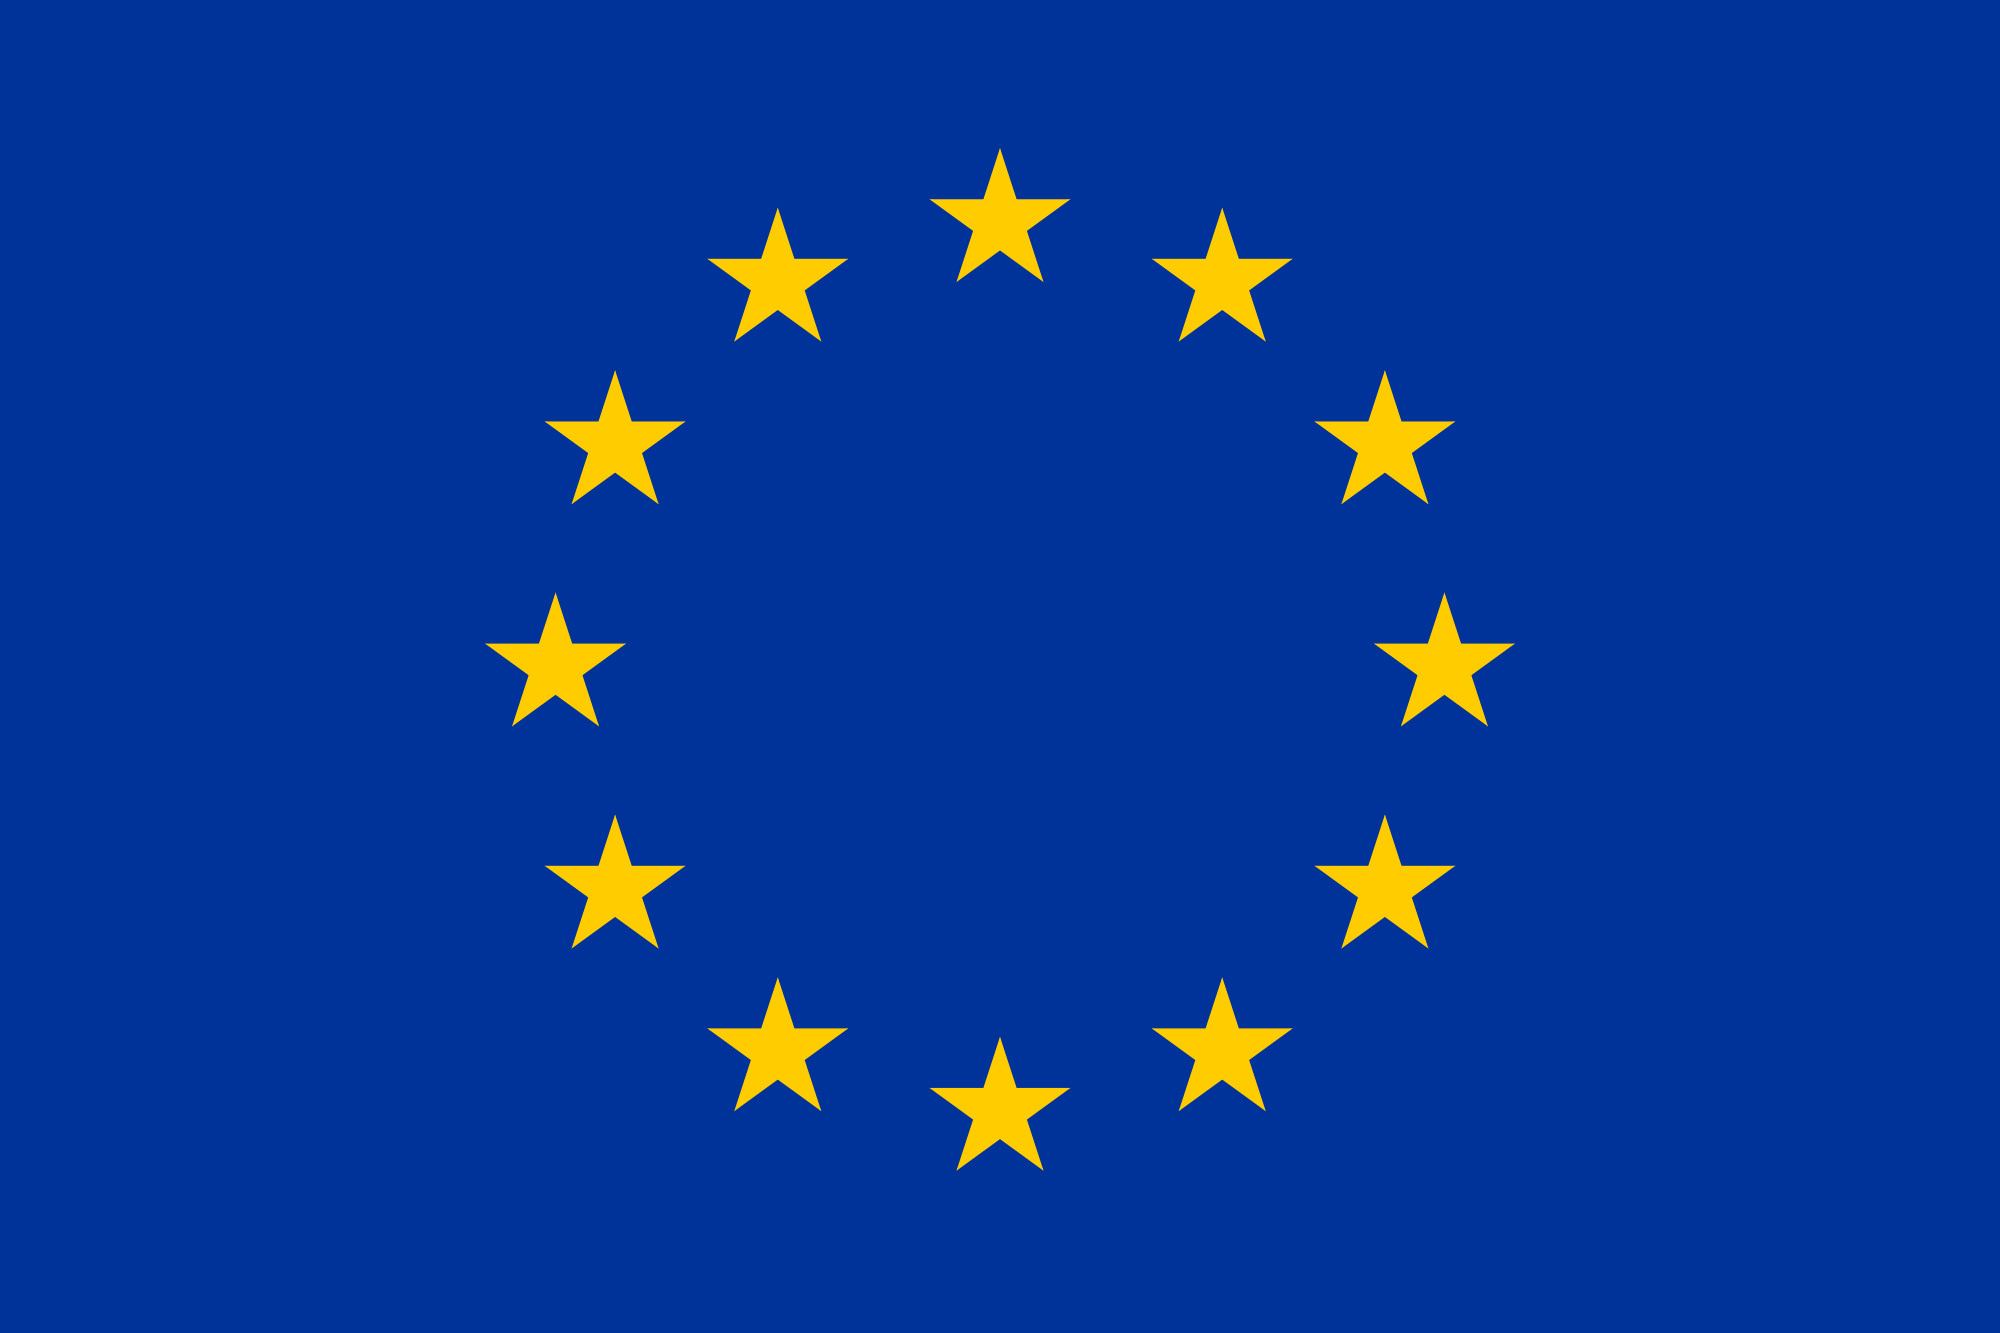 2000x1333 Flag of the European Union. Flag of the European Union